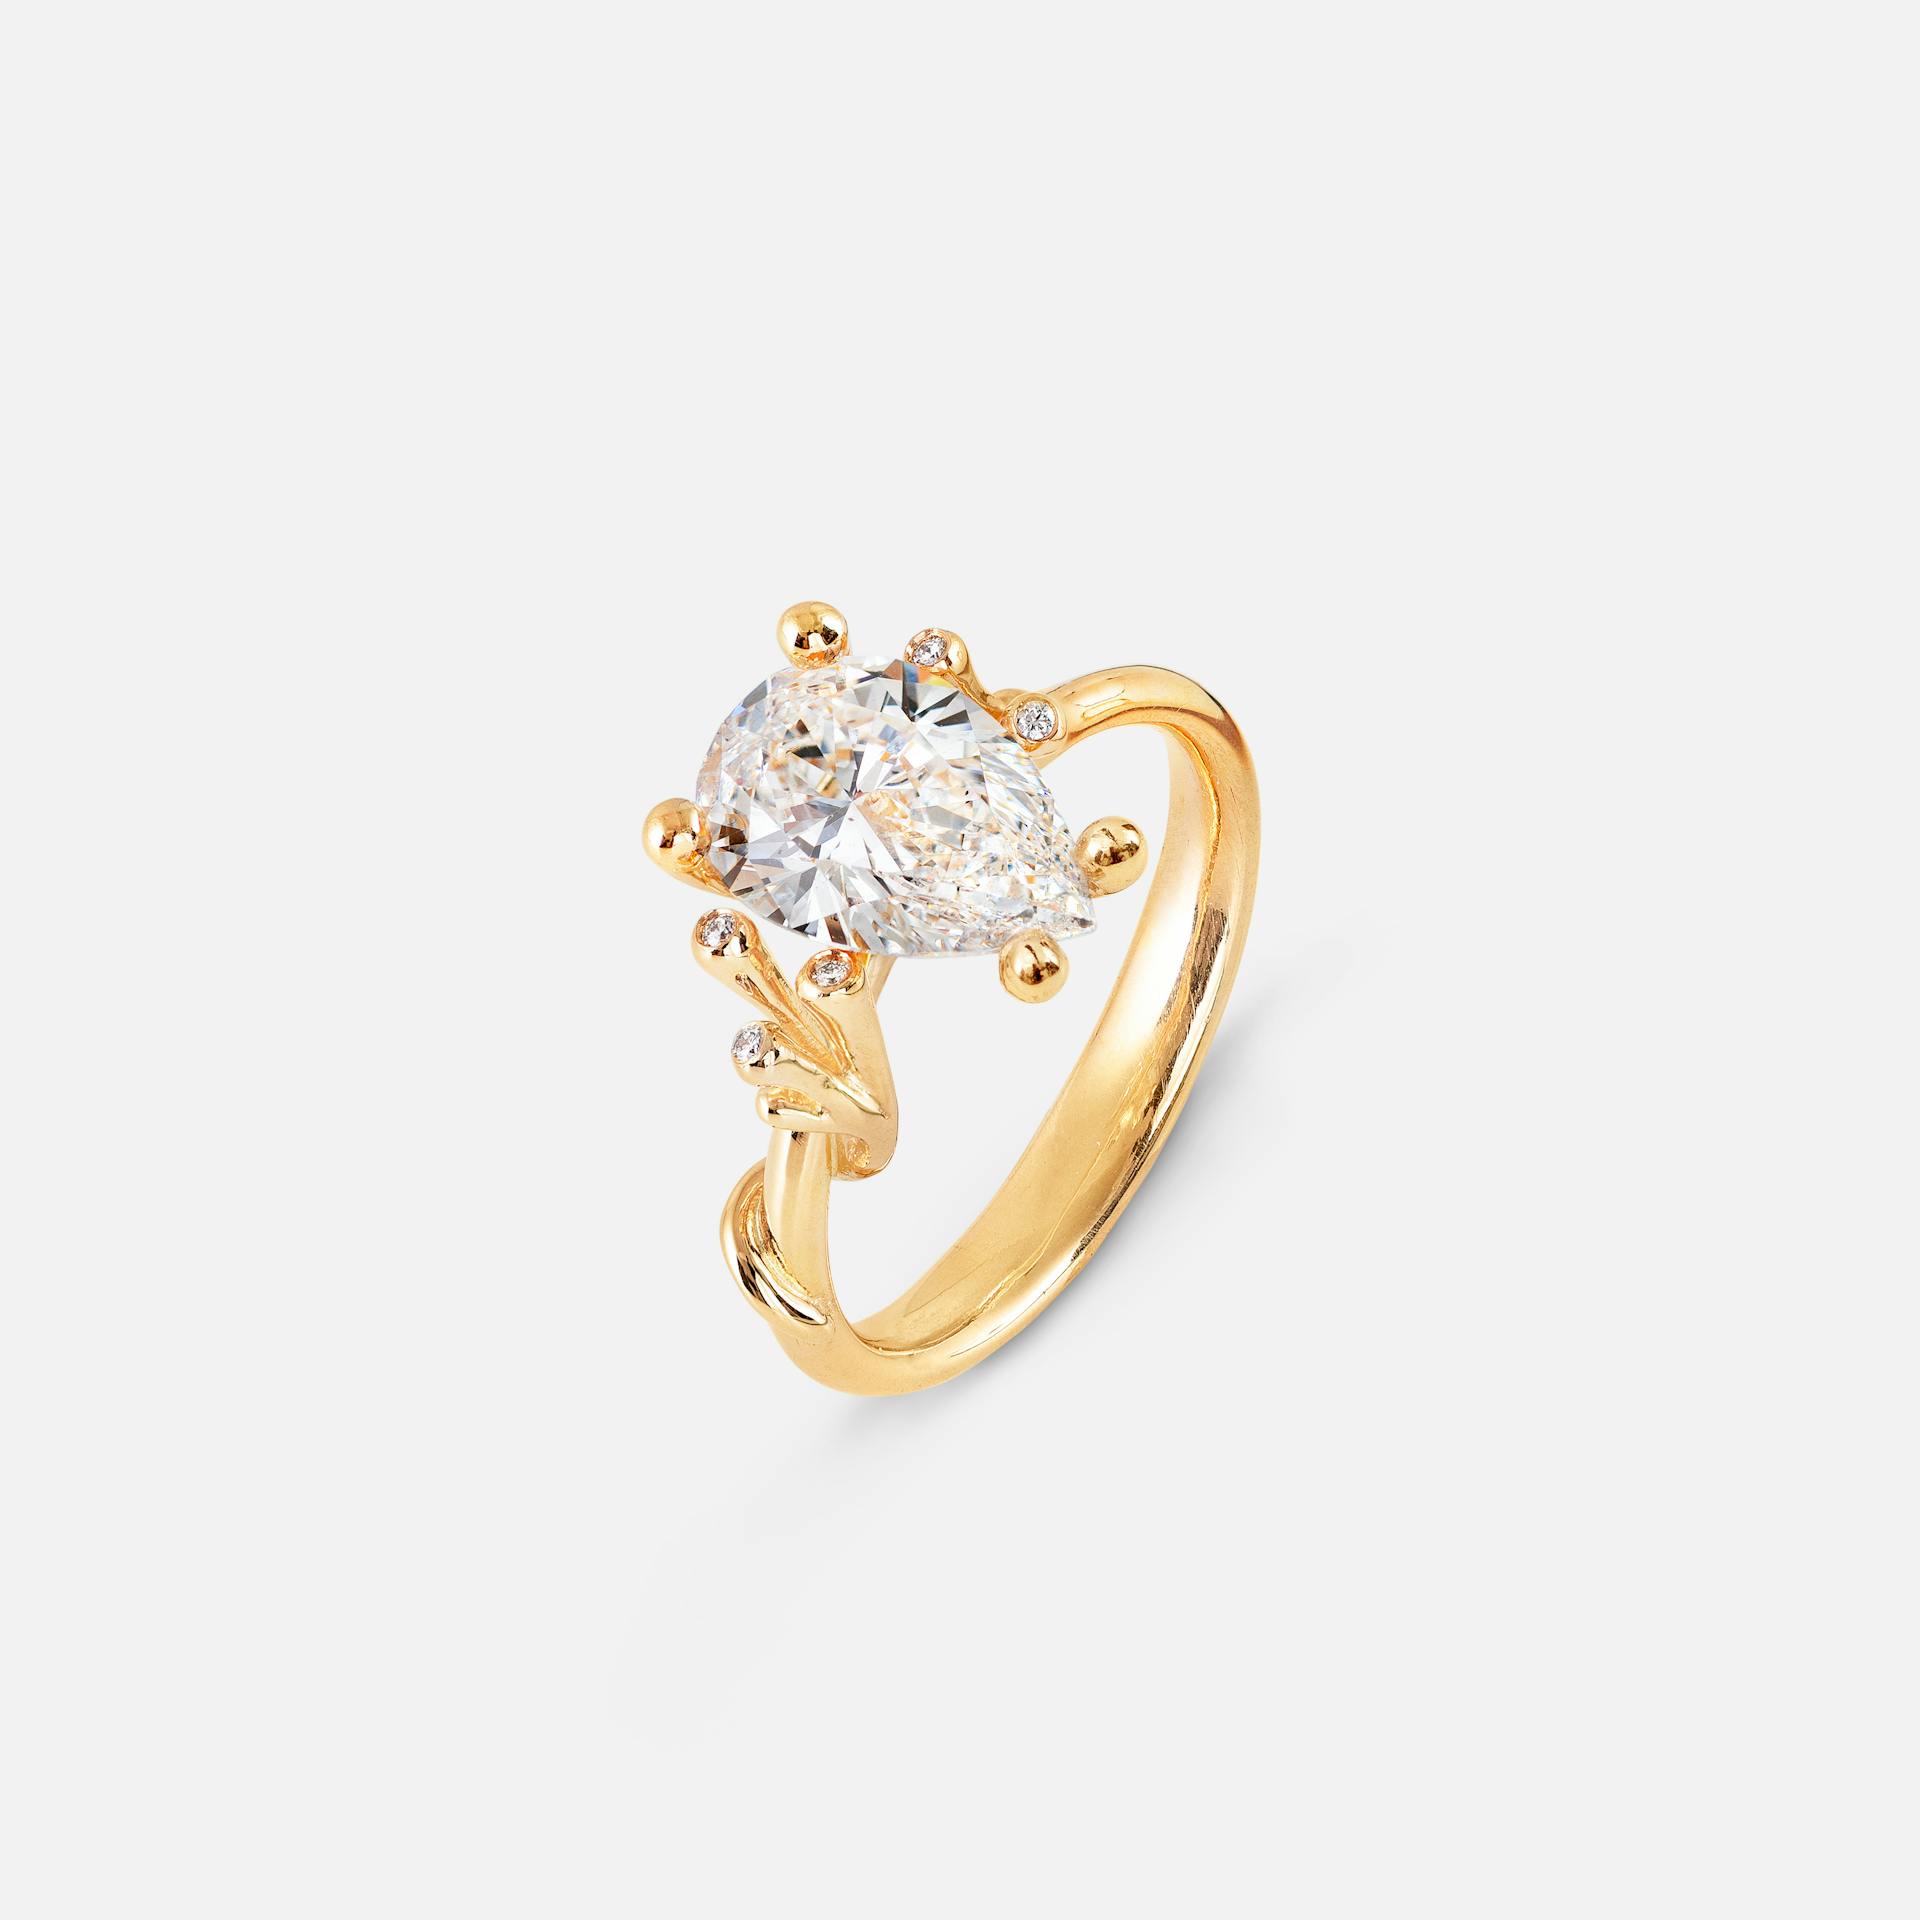 Solitaire necklace 18k guld sat med pæreformet diamant fra 0,80 ct.